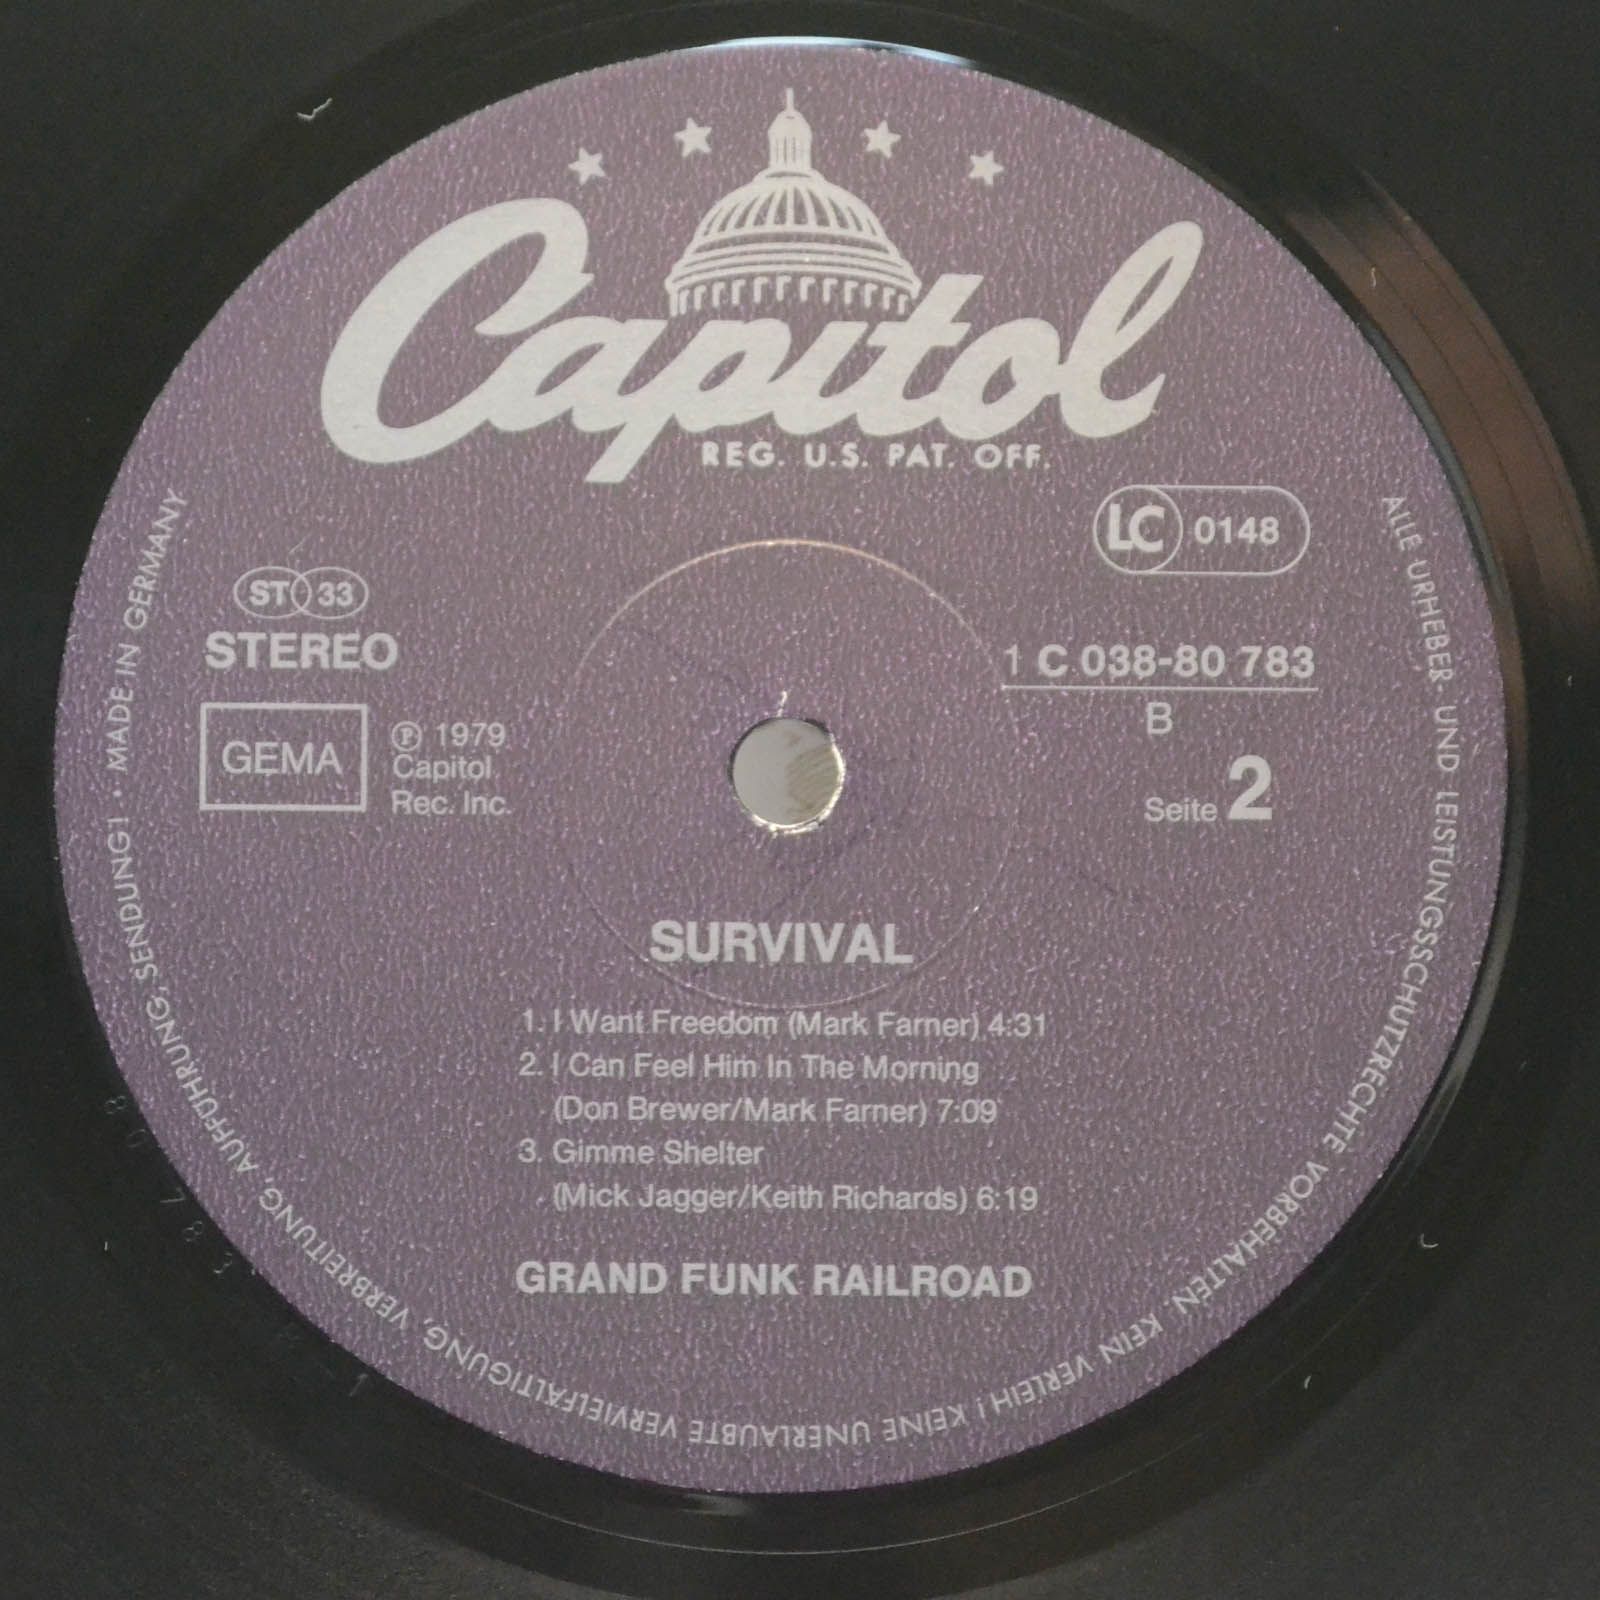 Grand Funk Railroad — Survival, 1971